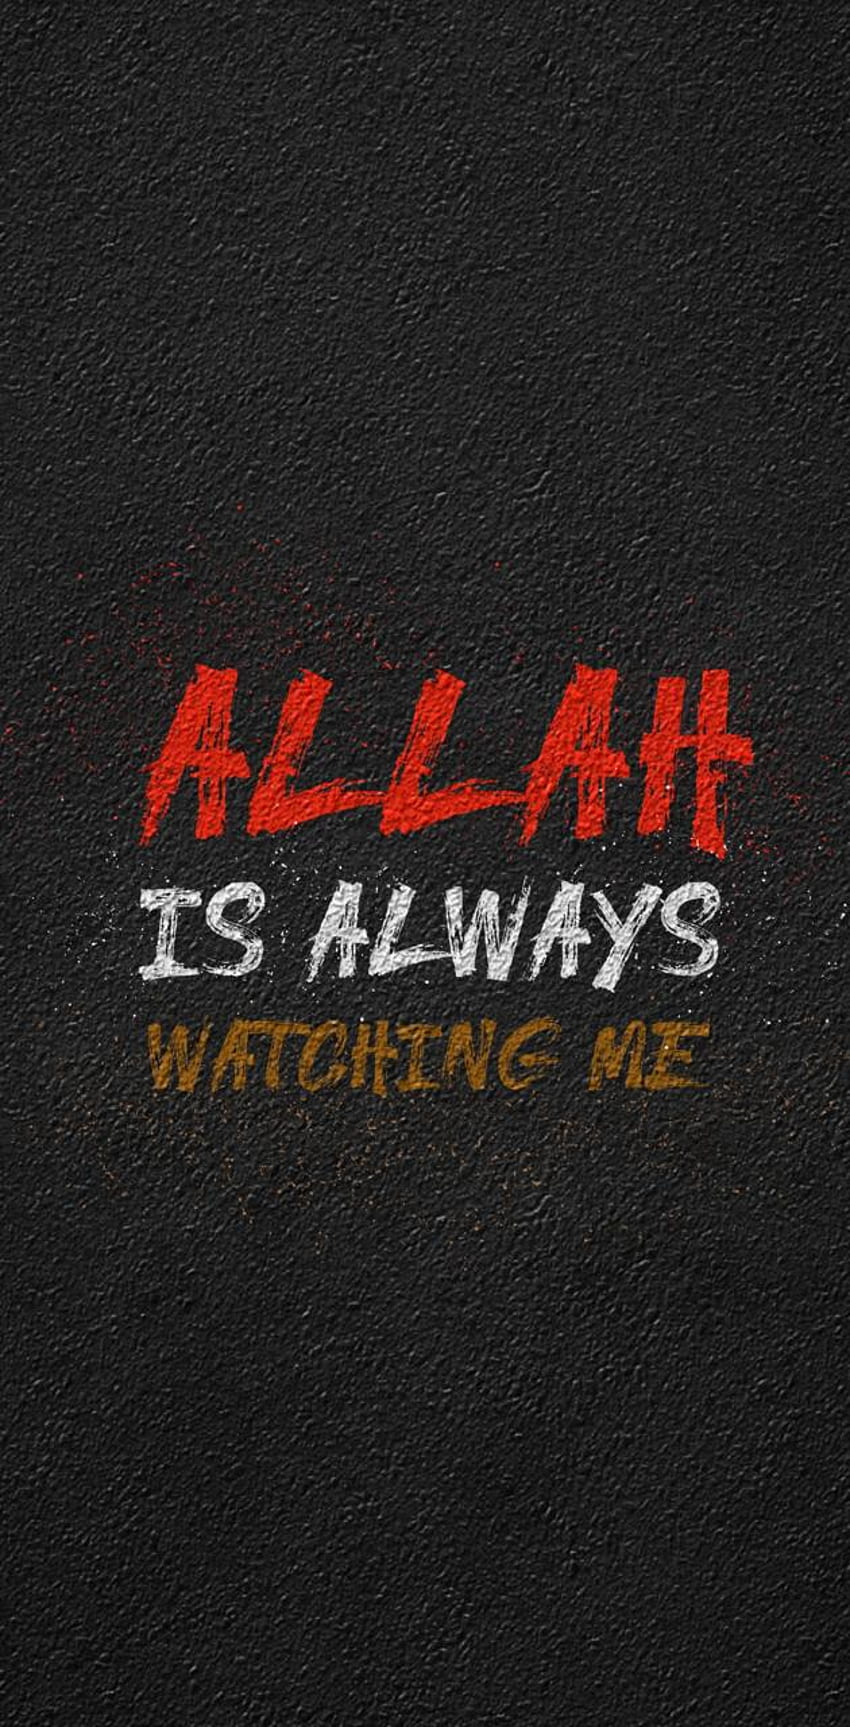 Allah by arafatQS - on ZEDGEâ, Allah Is Watching Me HD phone wallpaper